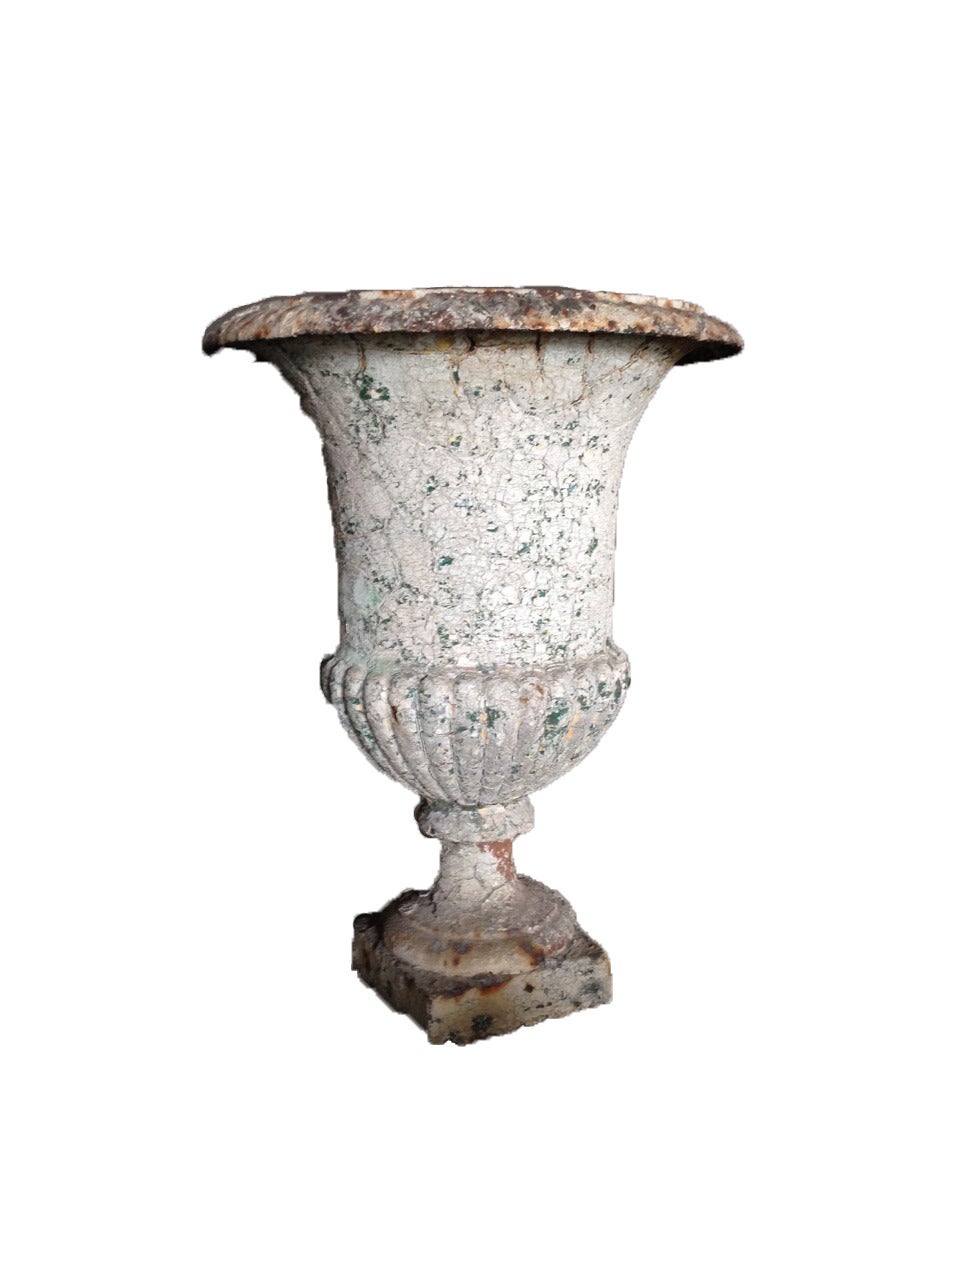 Beautiful iron urn with original patina.